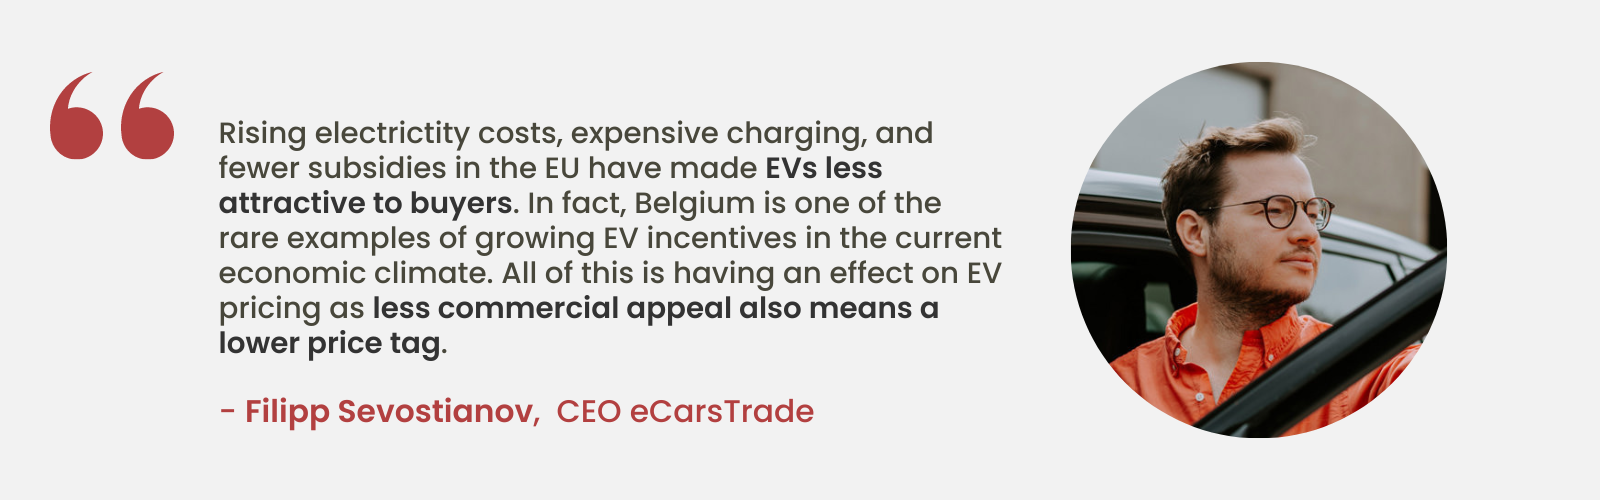 Стручни увид Филипа Севостианова, генералног директора еЦарсТраде-а, о све мање привлачности електричних возила због растућих трошкова и мањег броја субвенција у ЕУ, наглашавајући јединствену позицију Белгије са растућим подстицајима за електрична возила.